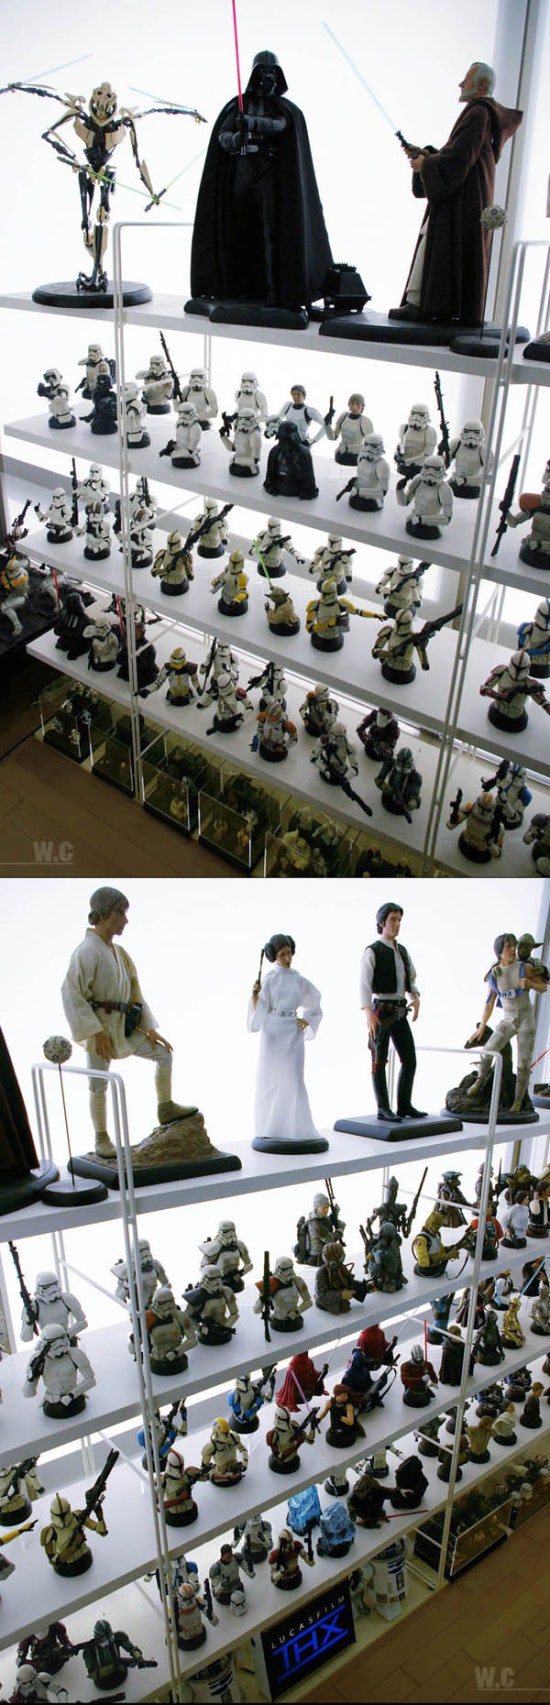 Coleção de Star Wars Wc1111_woong0731